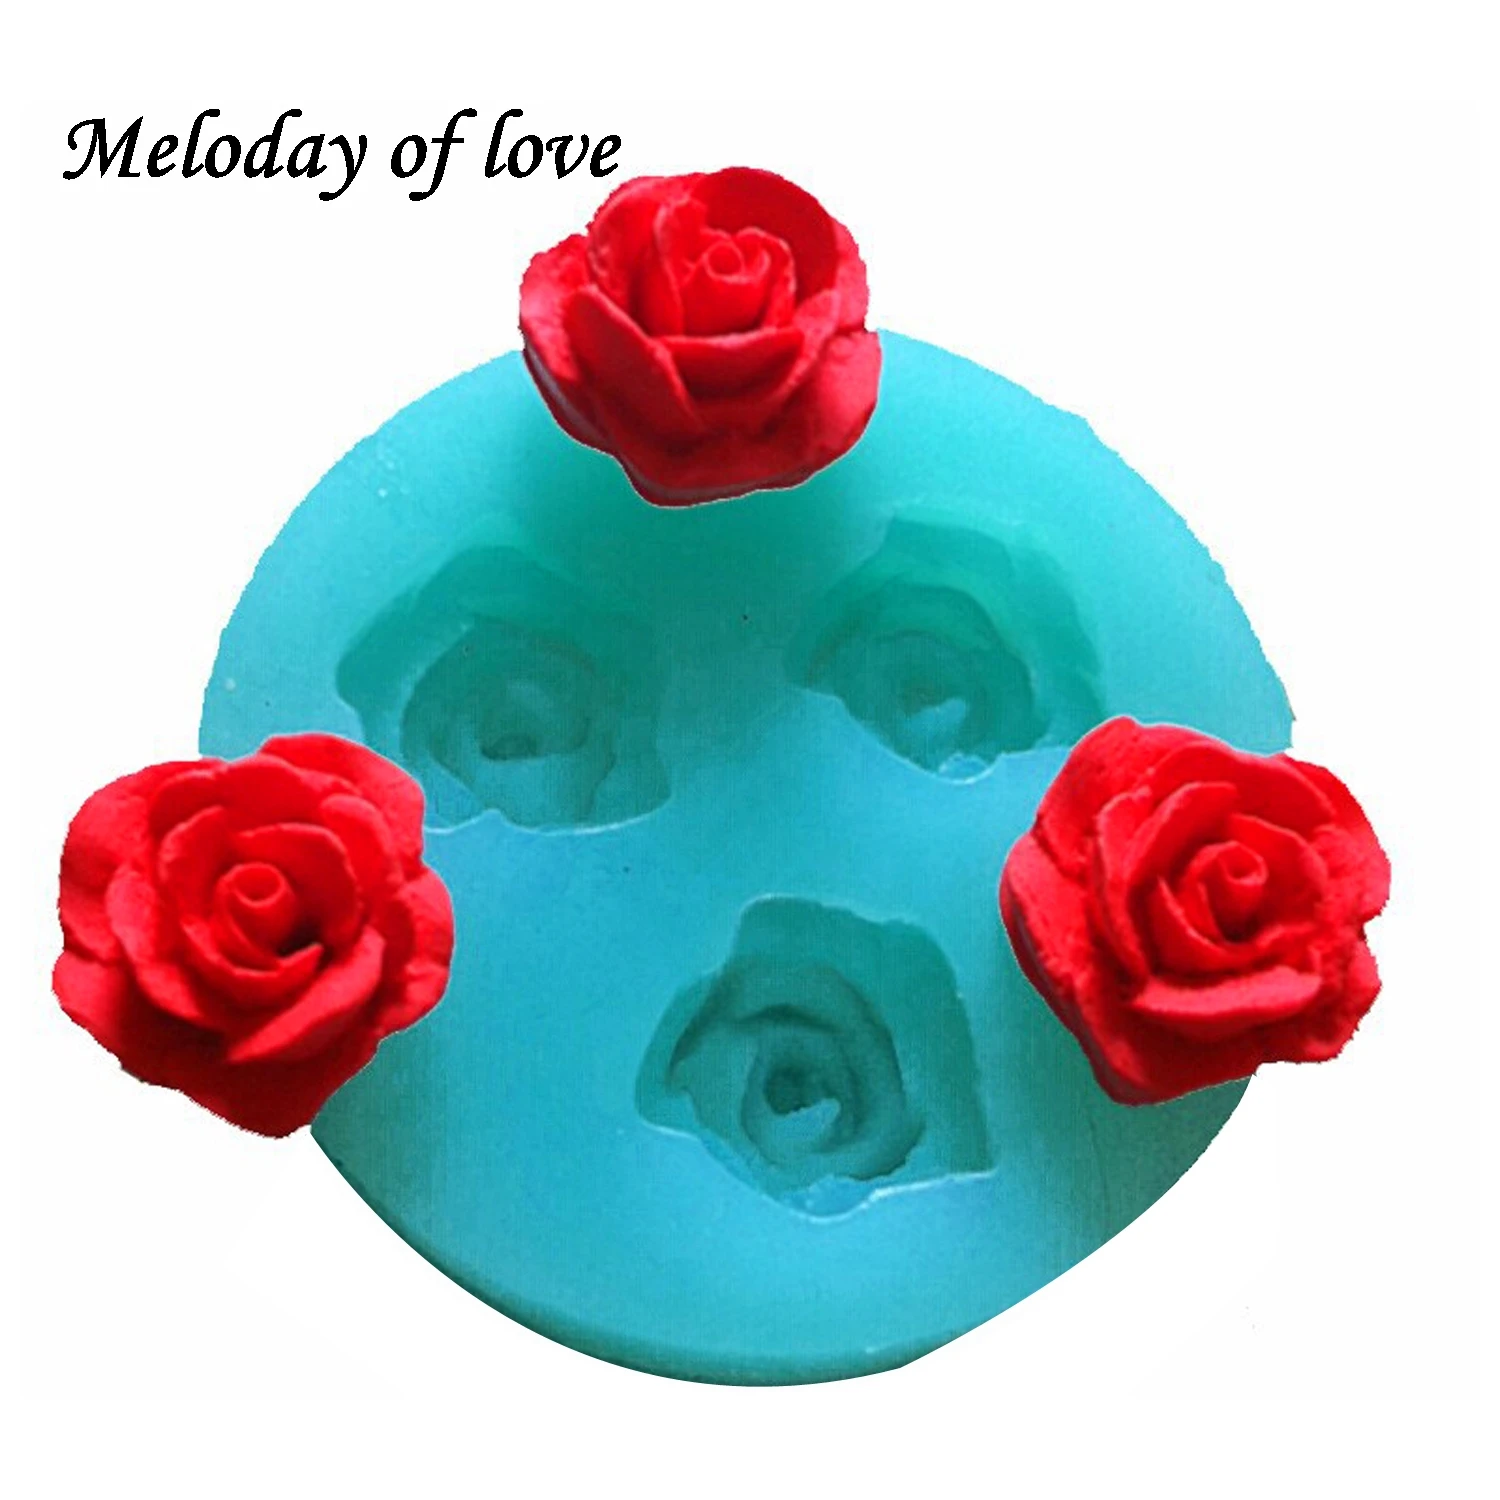 3D վարդի ծաղիկներ շոկոլադե հարսանեկան տորթի զարդարման գործիքներ 3D հացաթխման fondant սիլիկոնային բորբոս, որն օգտագործվում է հեշտությամբ թափած շաքարավազ ստեղծելու համար T0157